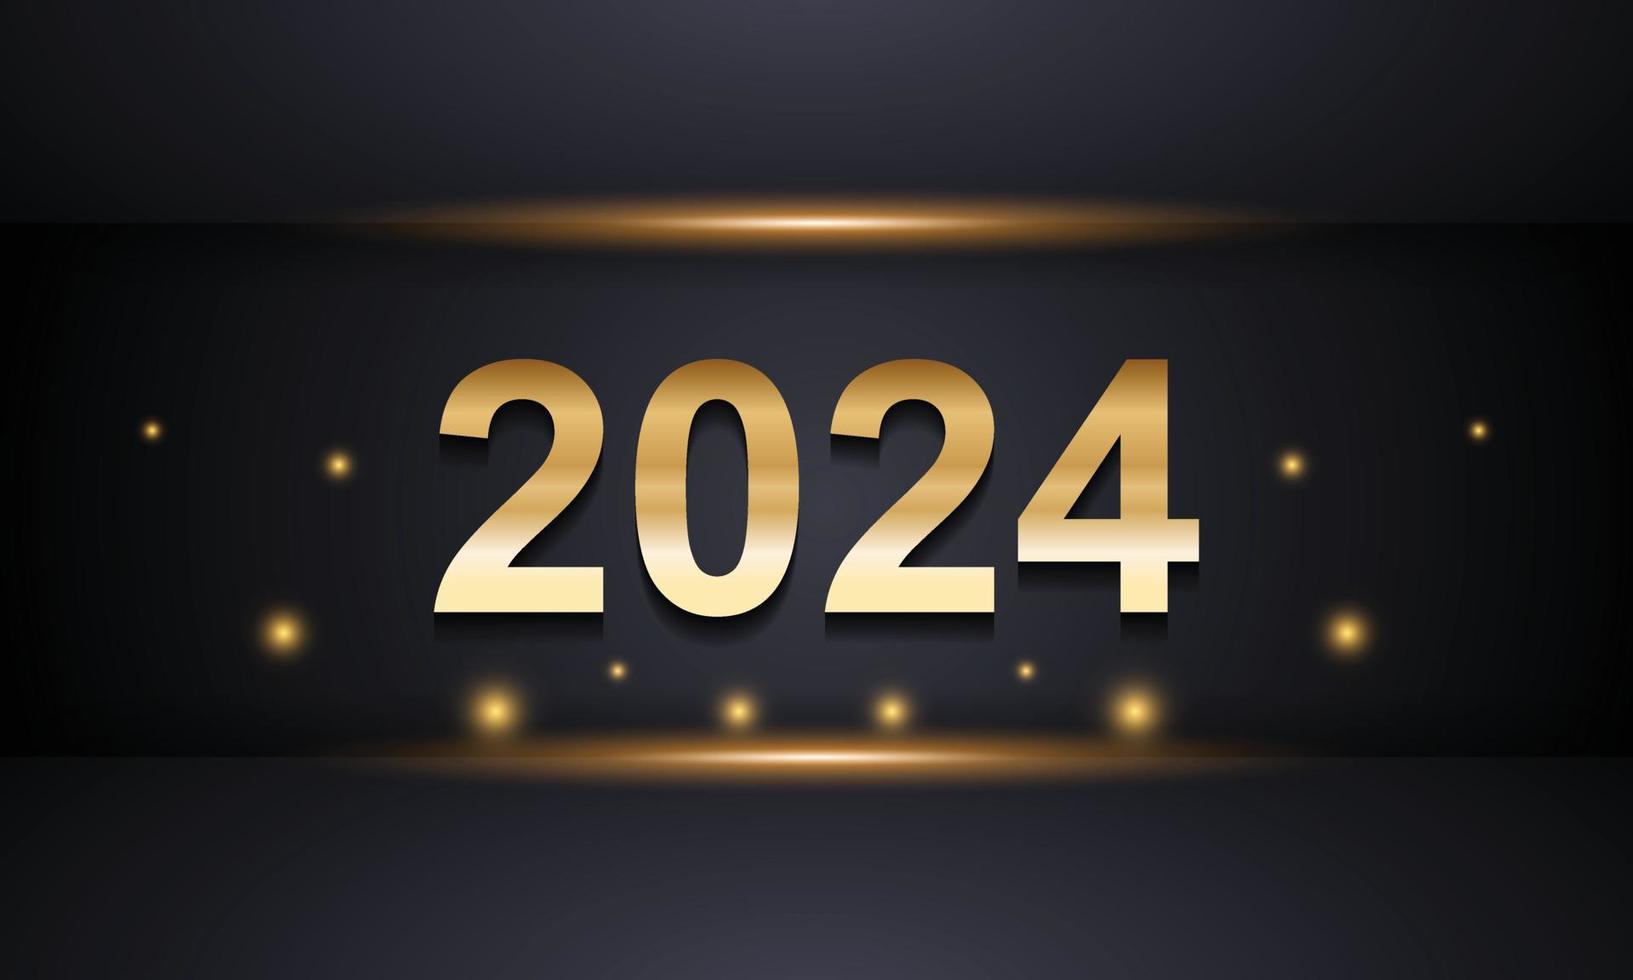 Diseño de fondo de feliz año nuevo 2024. tarjeta de felicitación, pancarta, póster. ilustración vectorial vector